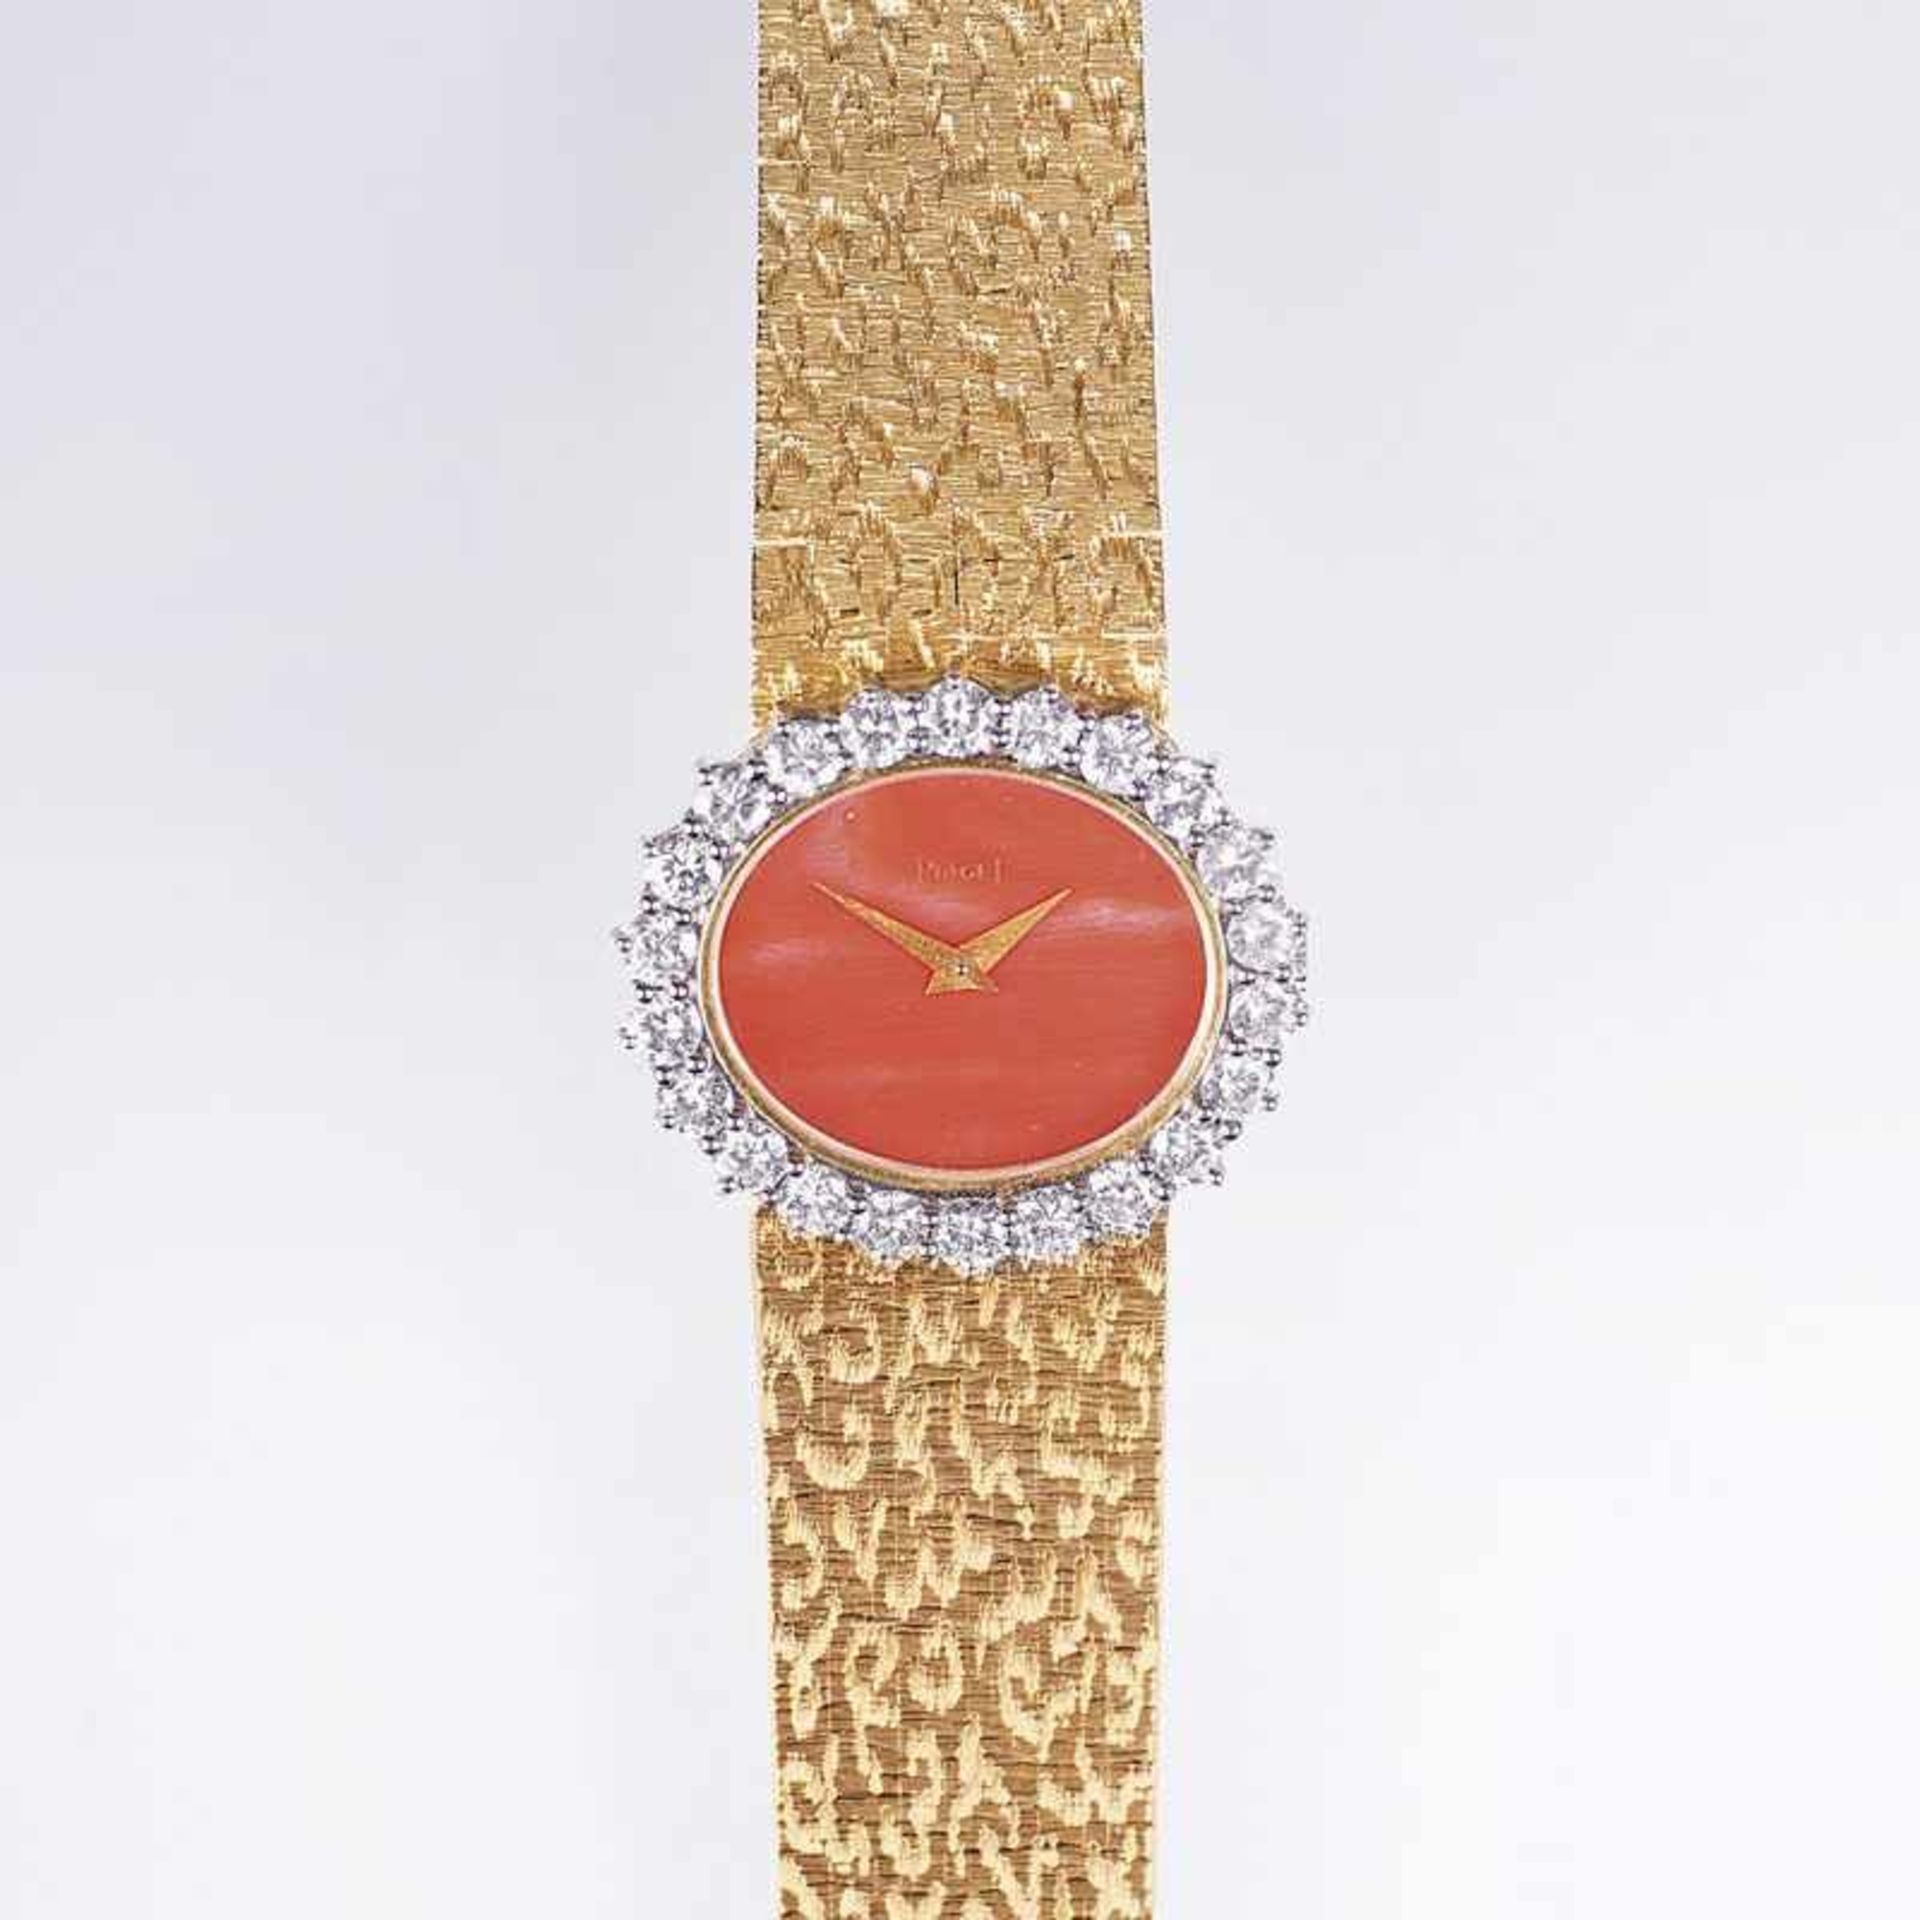 Piaget gegr. 1874 Vintage Damen-Armbanduhr mit Brillant-Besatz Um 1960. 18 kt. GG, gest. Handaufzug.